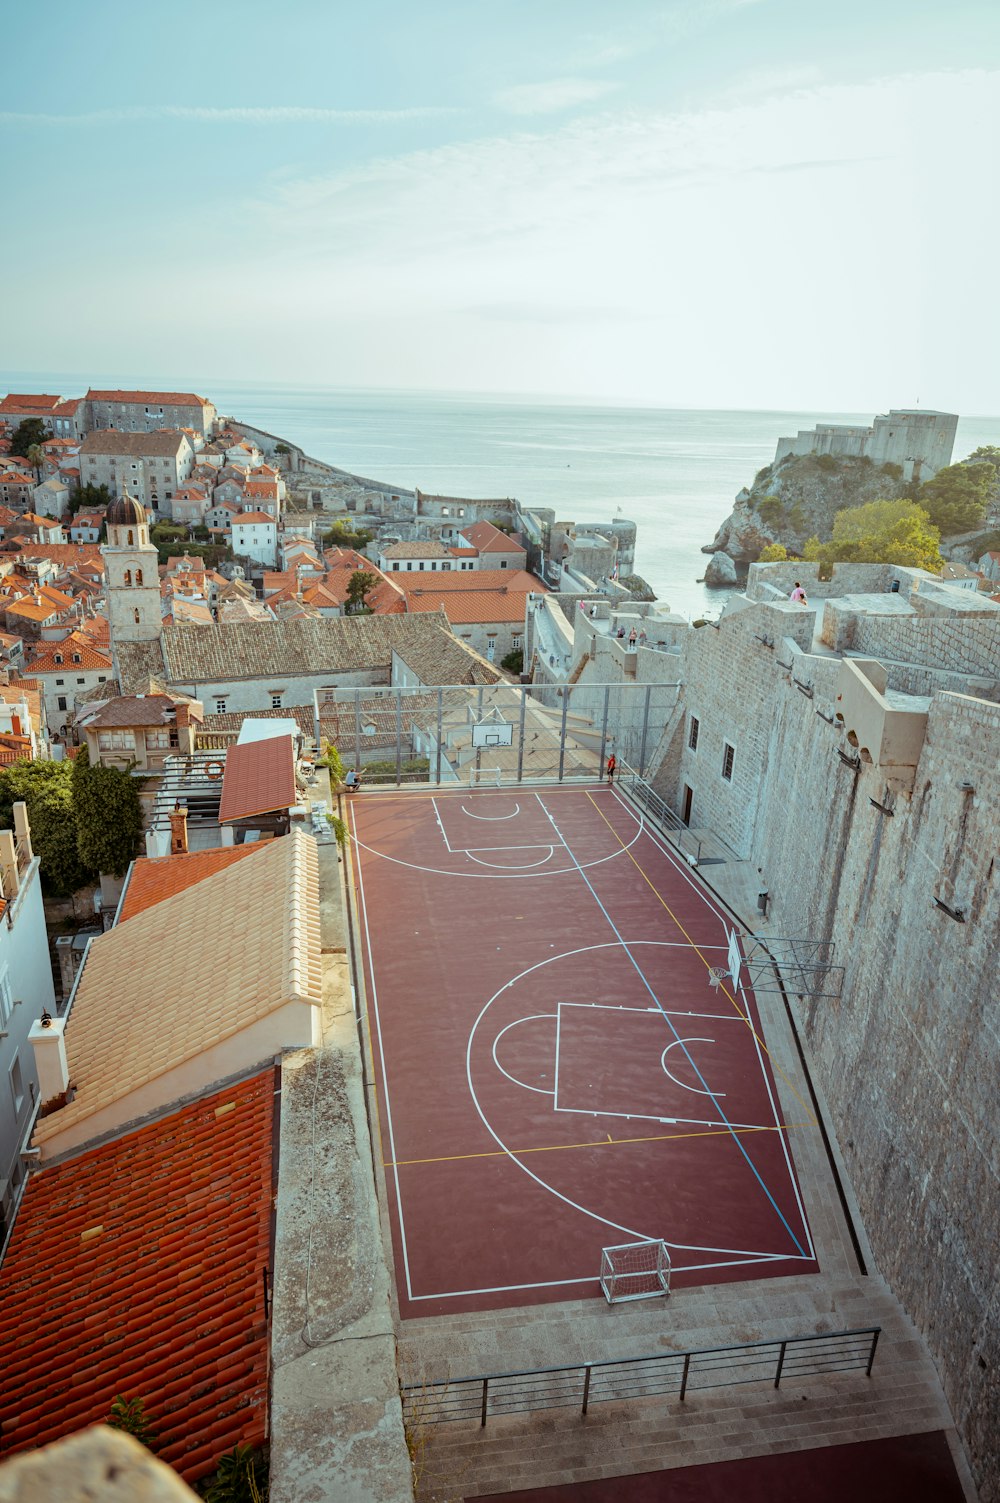 都市のバスケットボールコートの空中写真